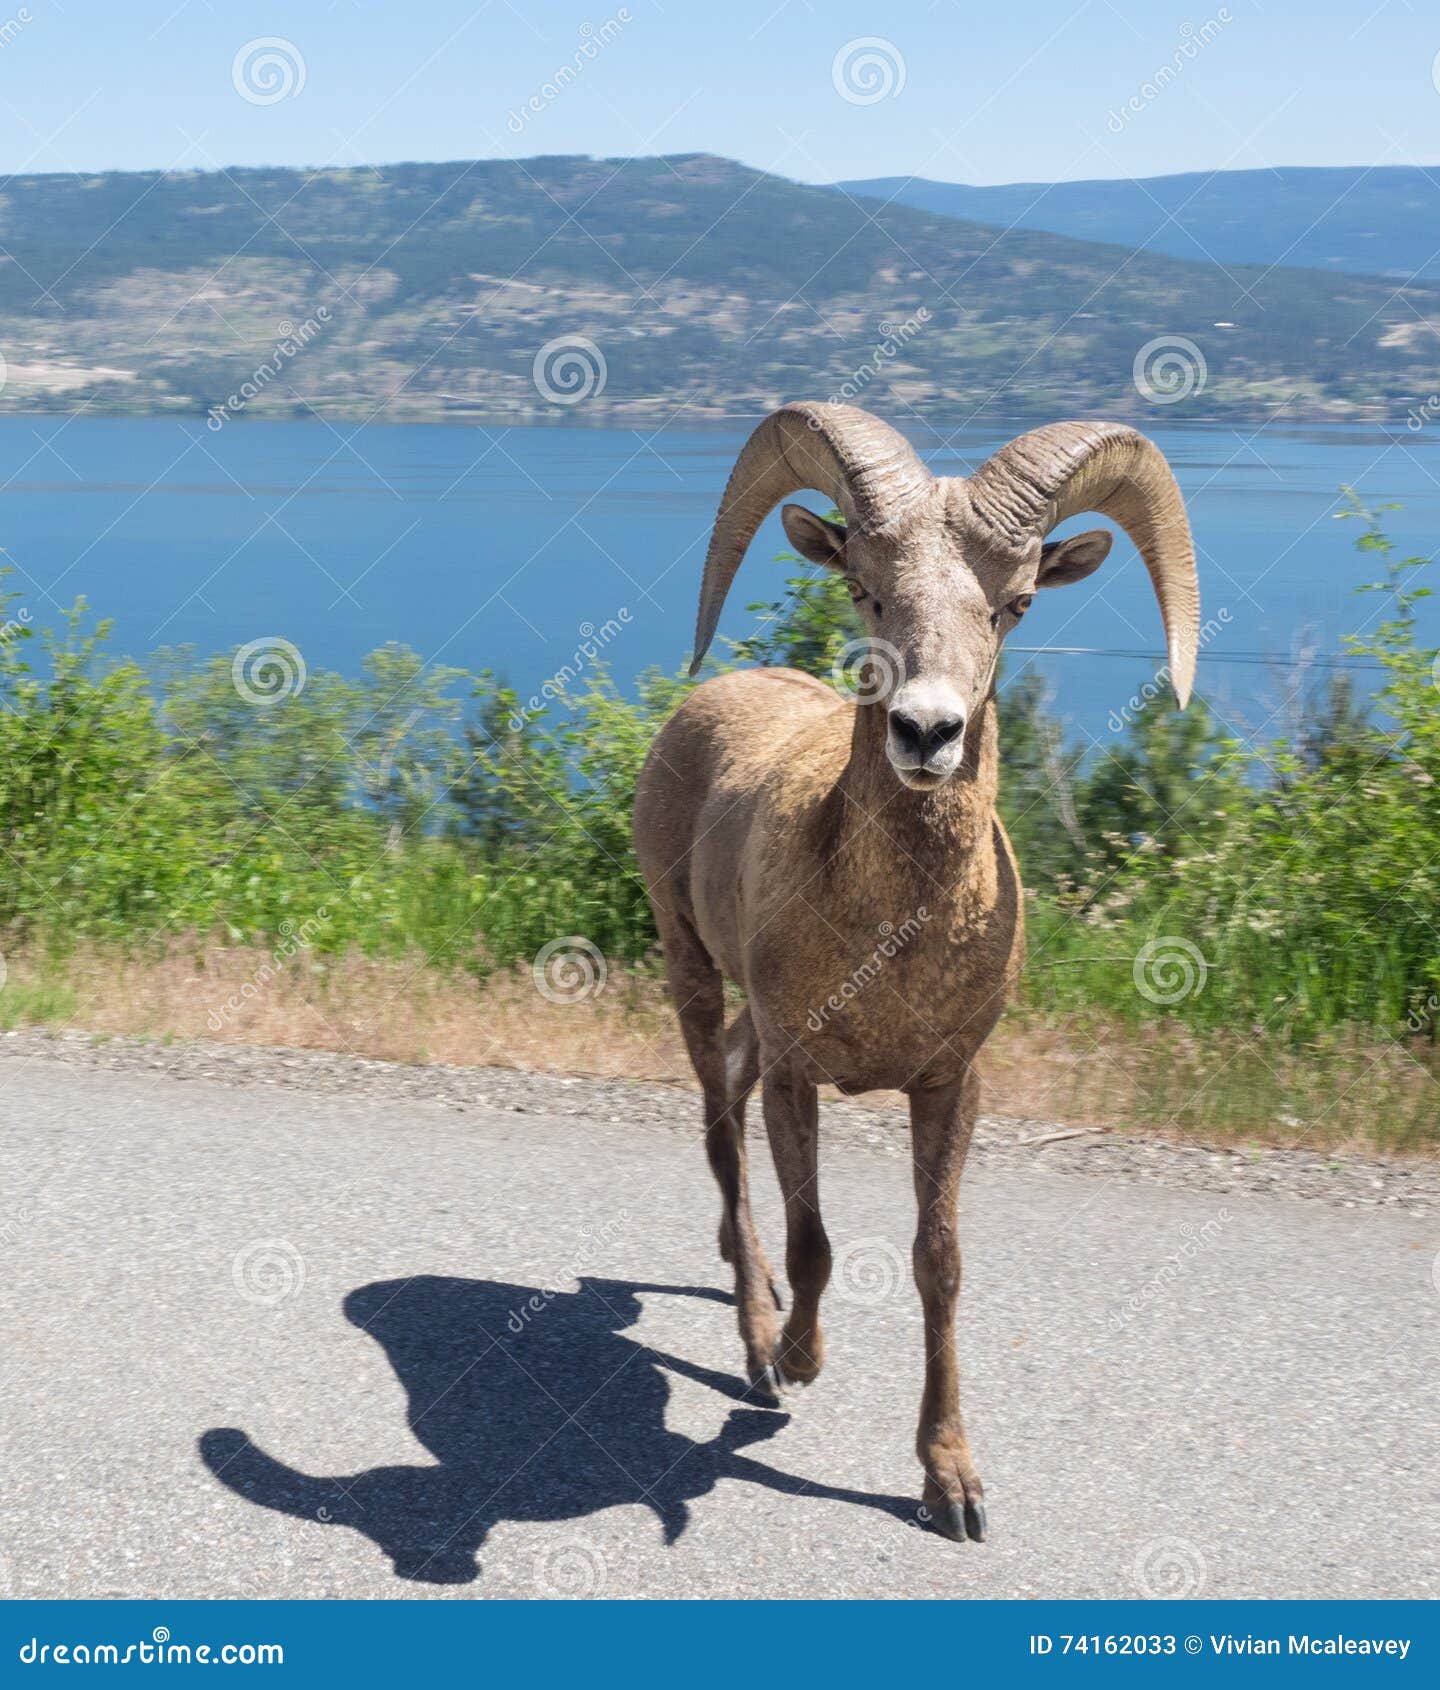 A wild, male big horn sheep runs near Okanagan Lake in British Columbia, Canada.